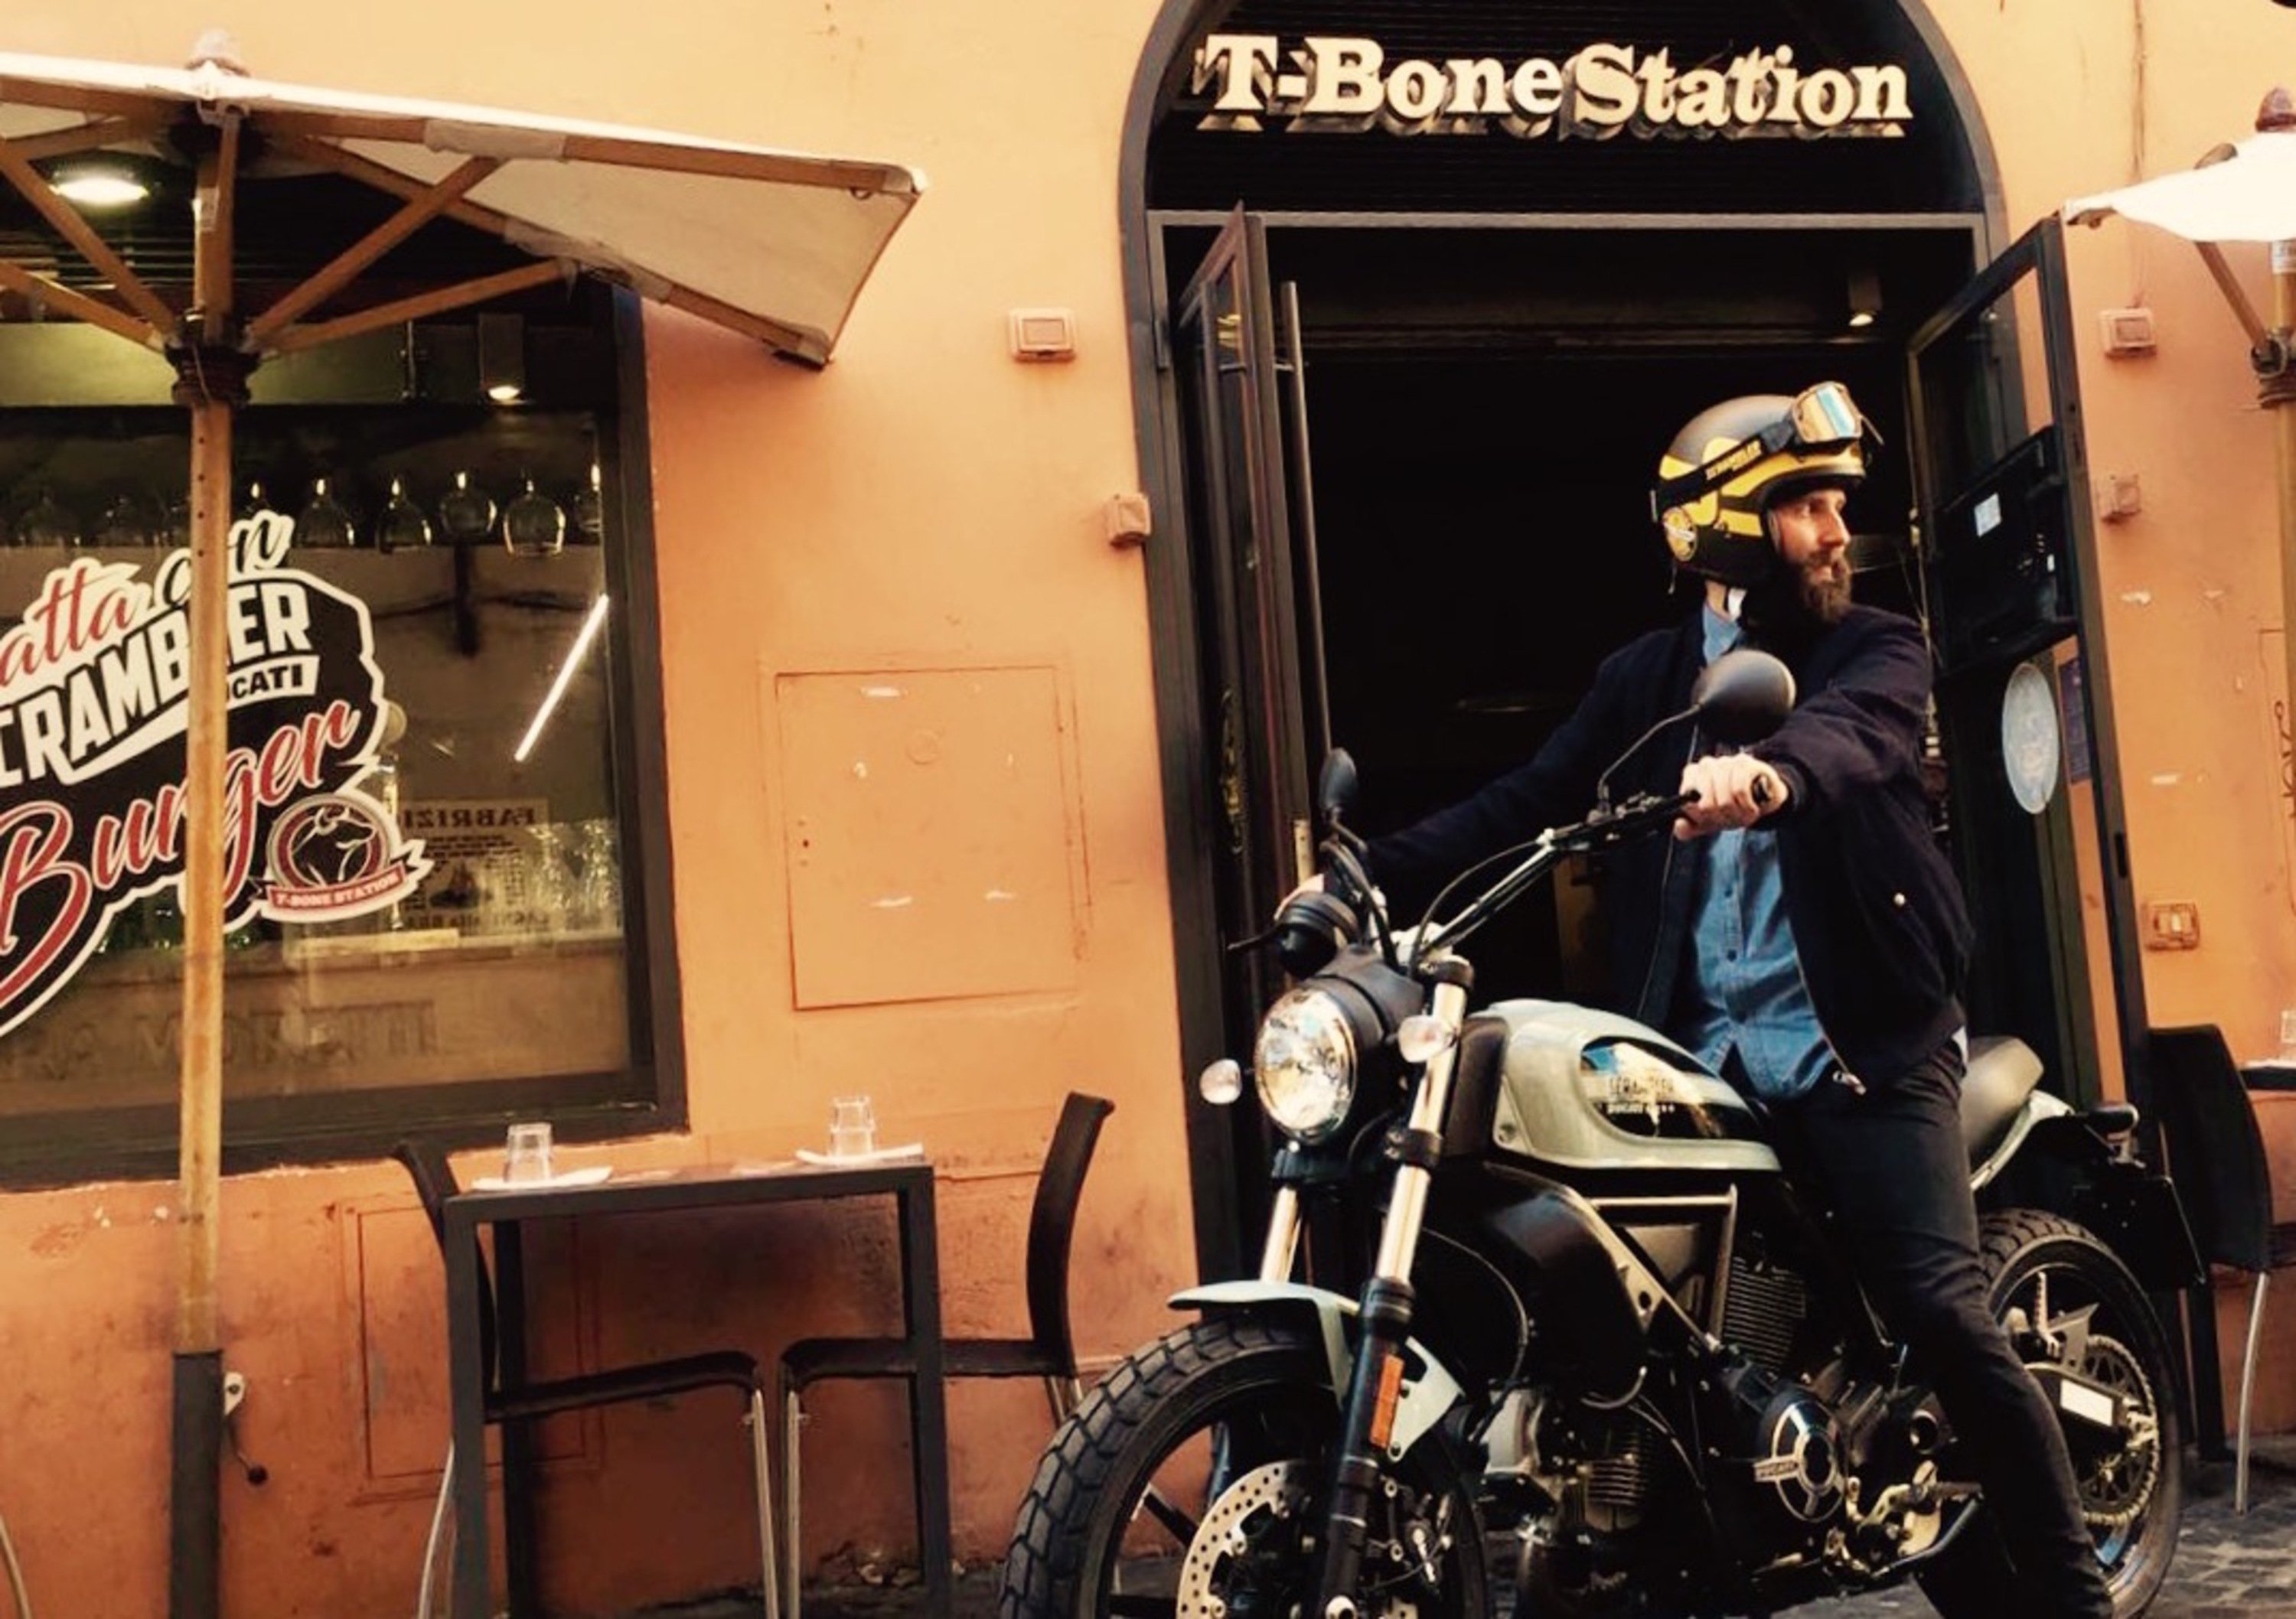 Ducati Roma: lo Scrambler lo trovi da T-Bone Station